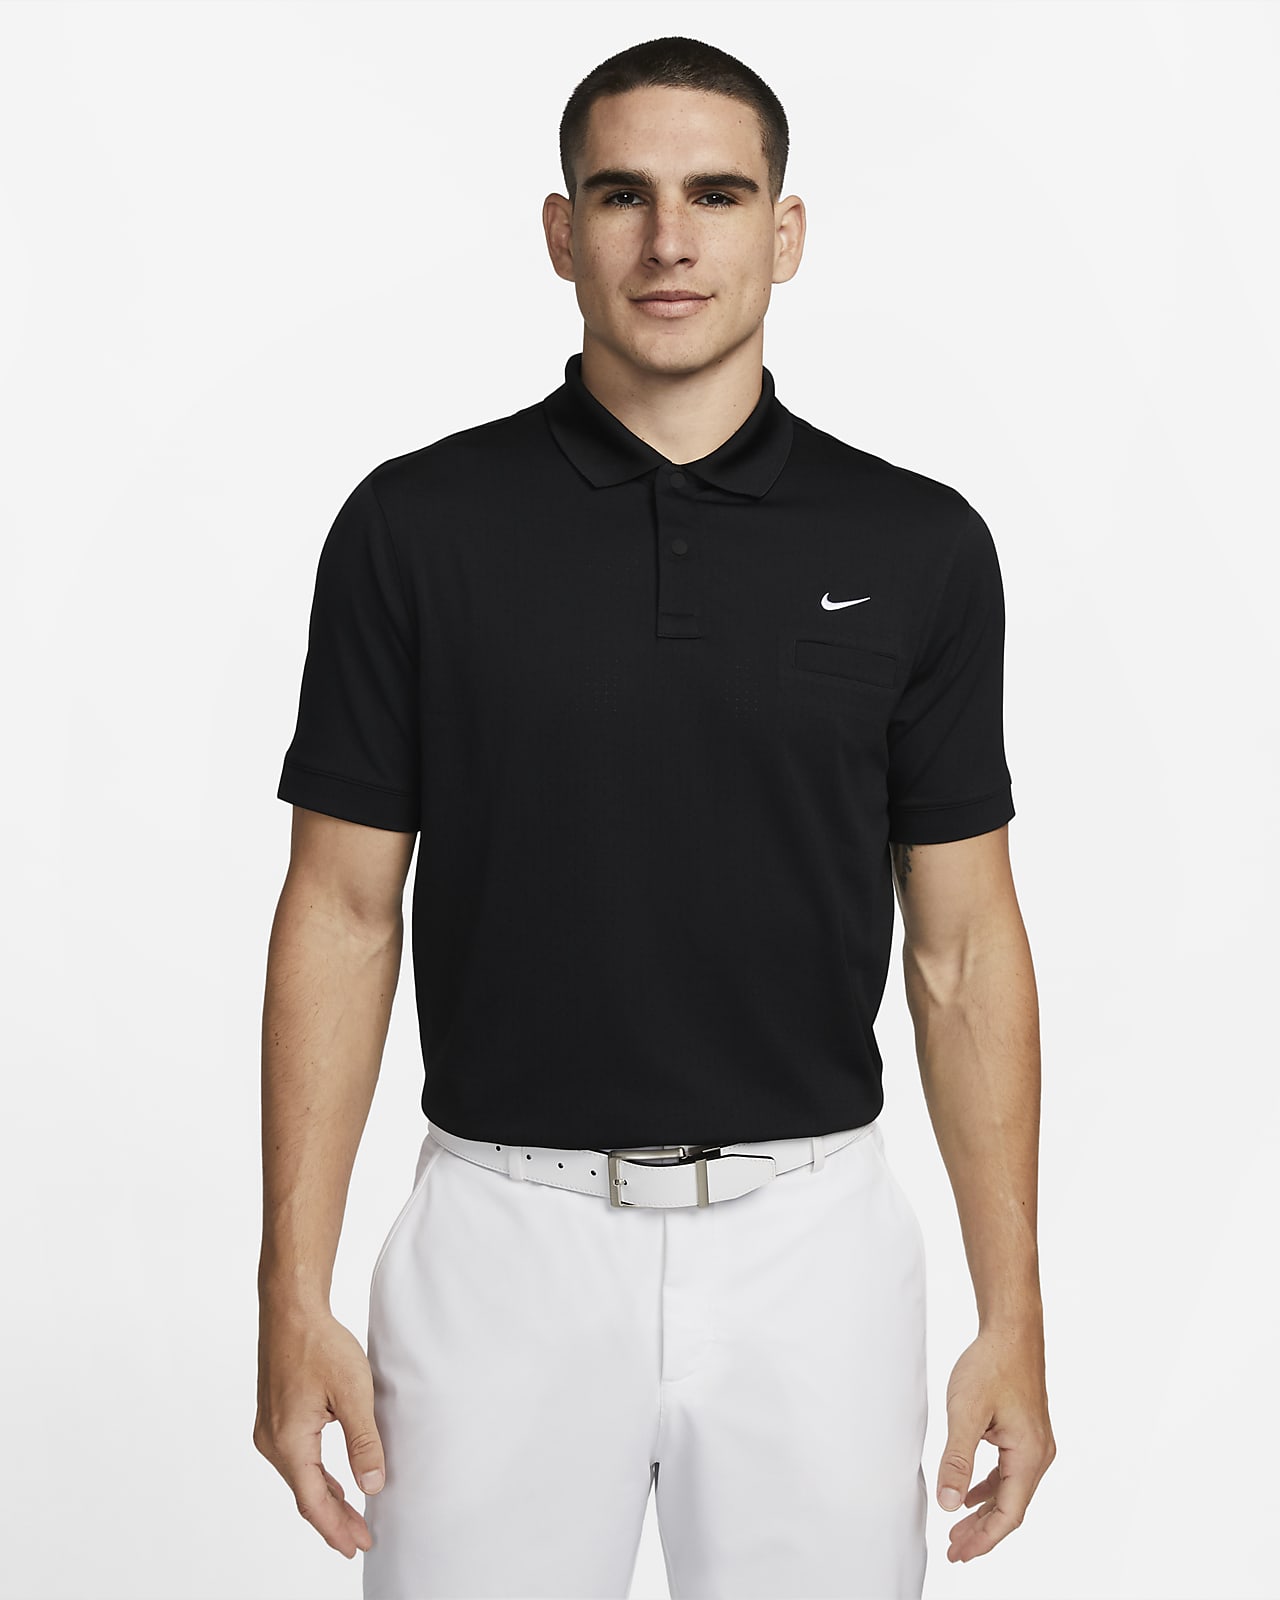 Zij zijn Opheldering wijsvinger Nike Dri-FIT Unscripted Men's Golf Polo. Nike.com